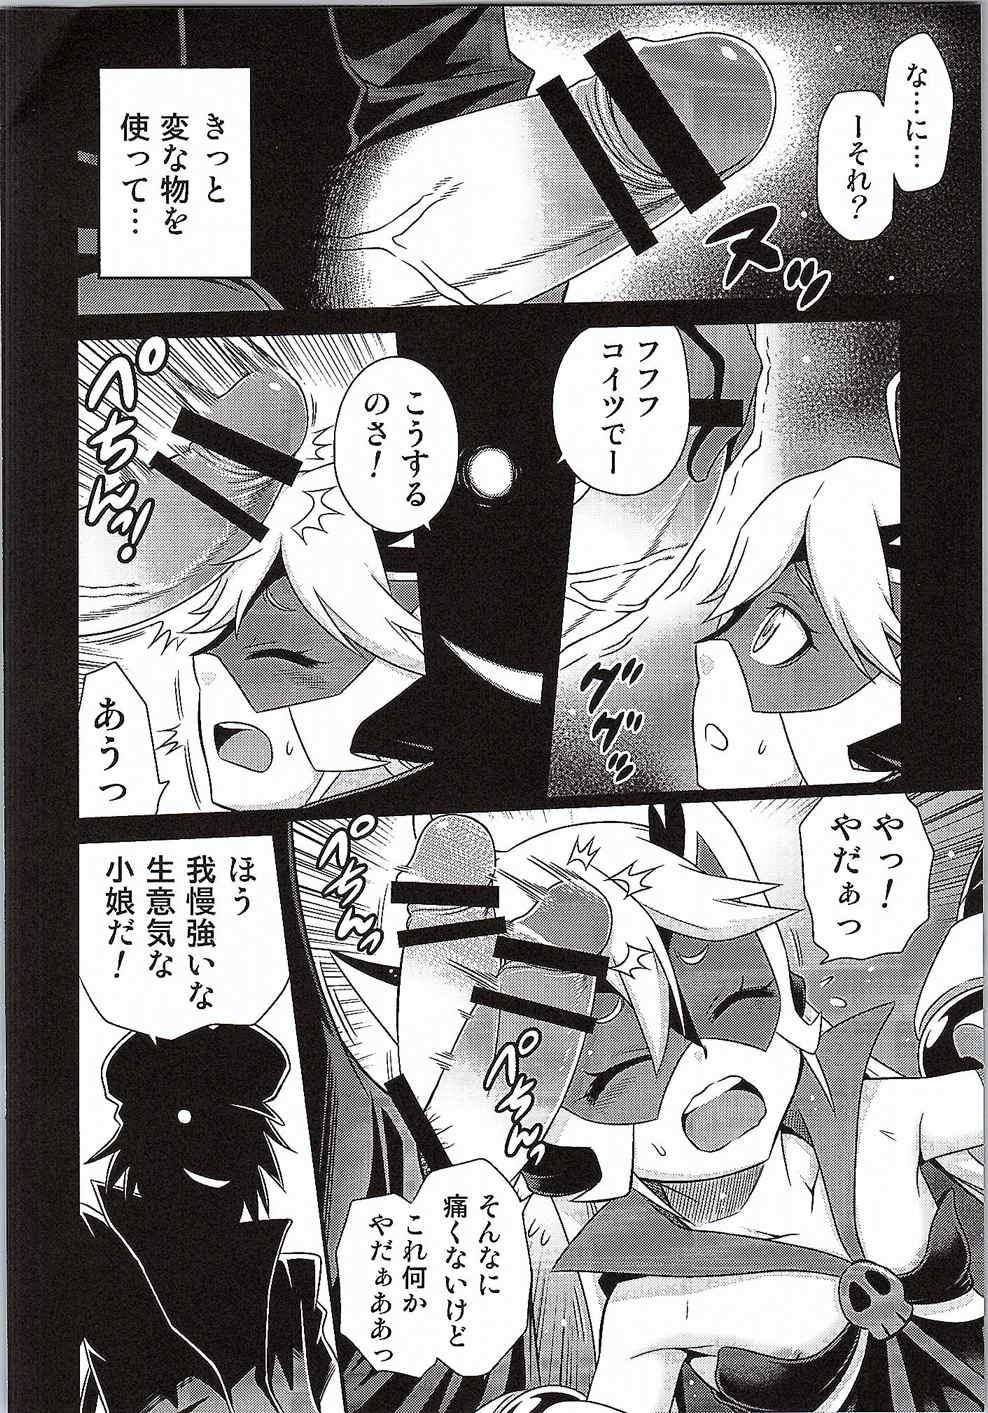 Lovers Tenshi-chan no Yume wa Yoru Hiraku - Yoru no yatterman Cheerleader - Page 3